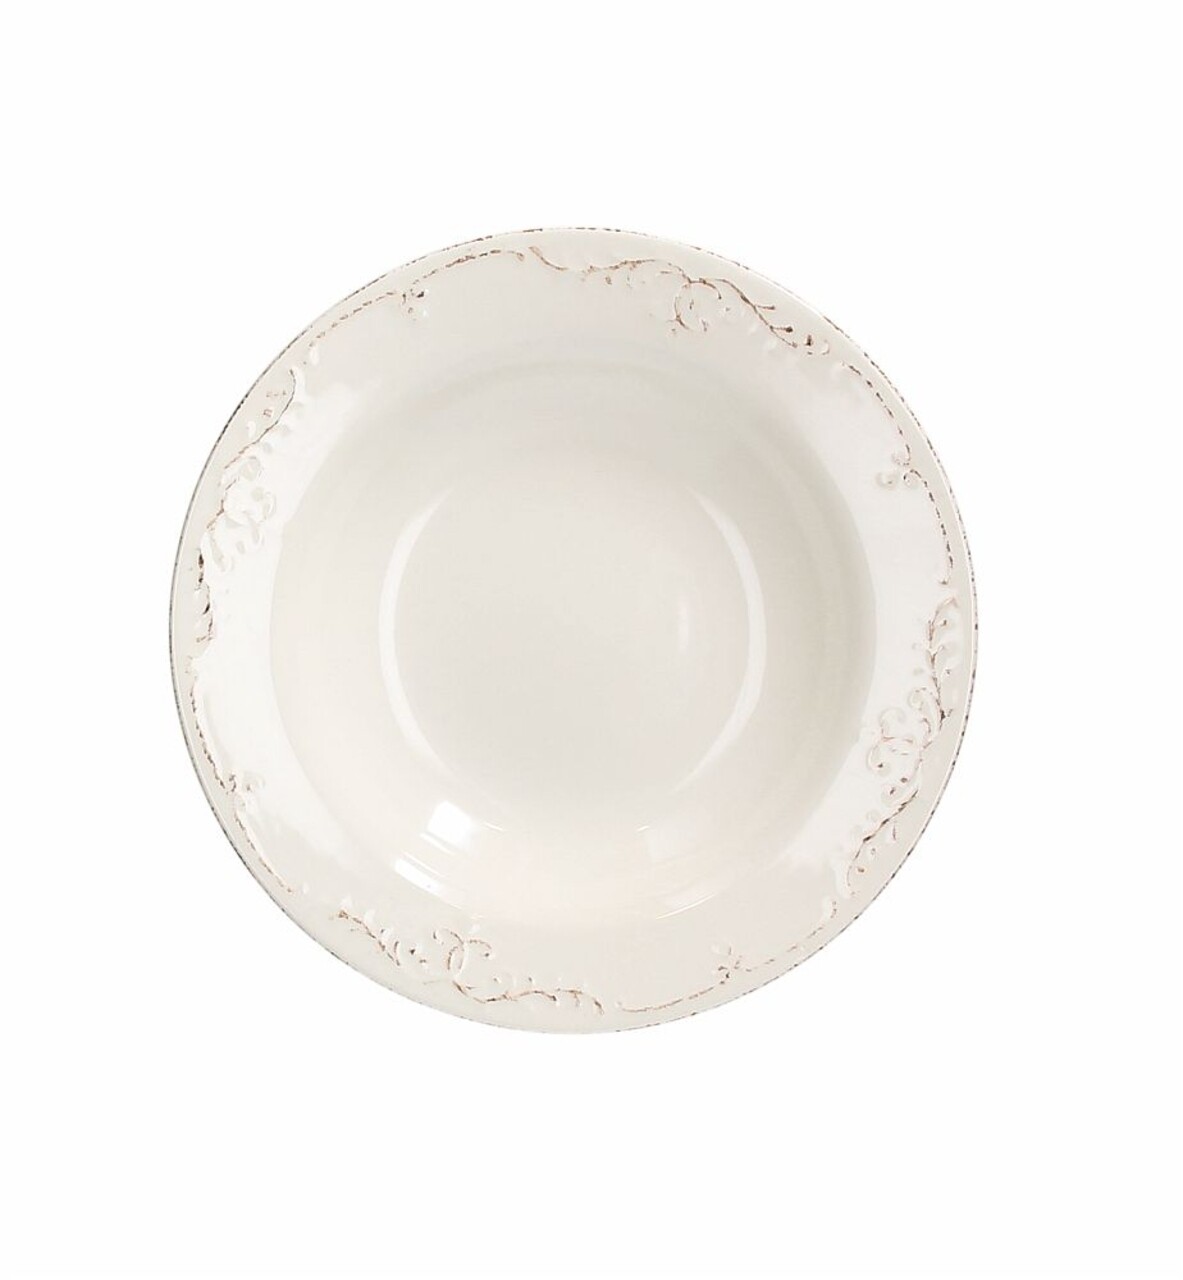 Mély tányérok, Tognana, Shabby Siena, 23 cm Ø, kerámia, fehér